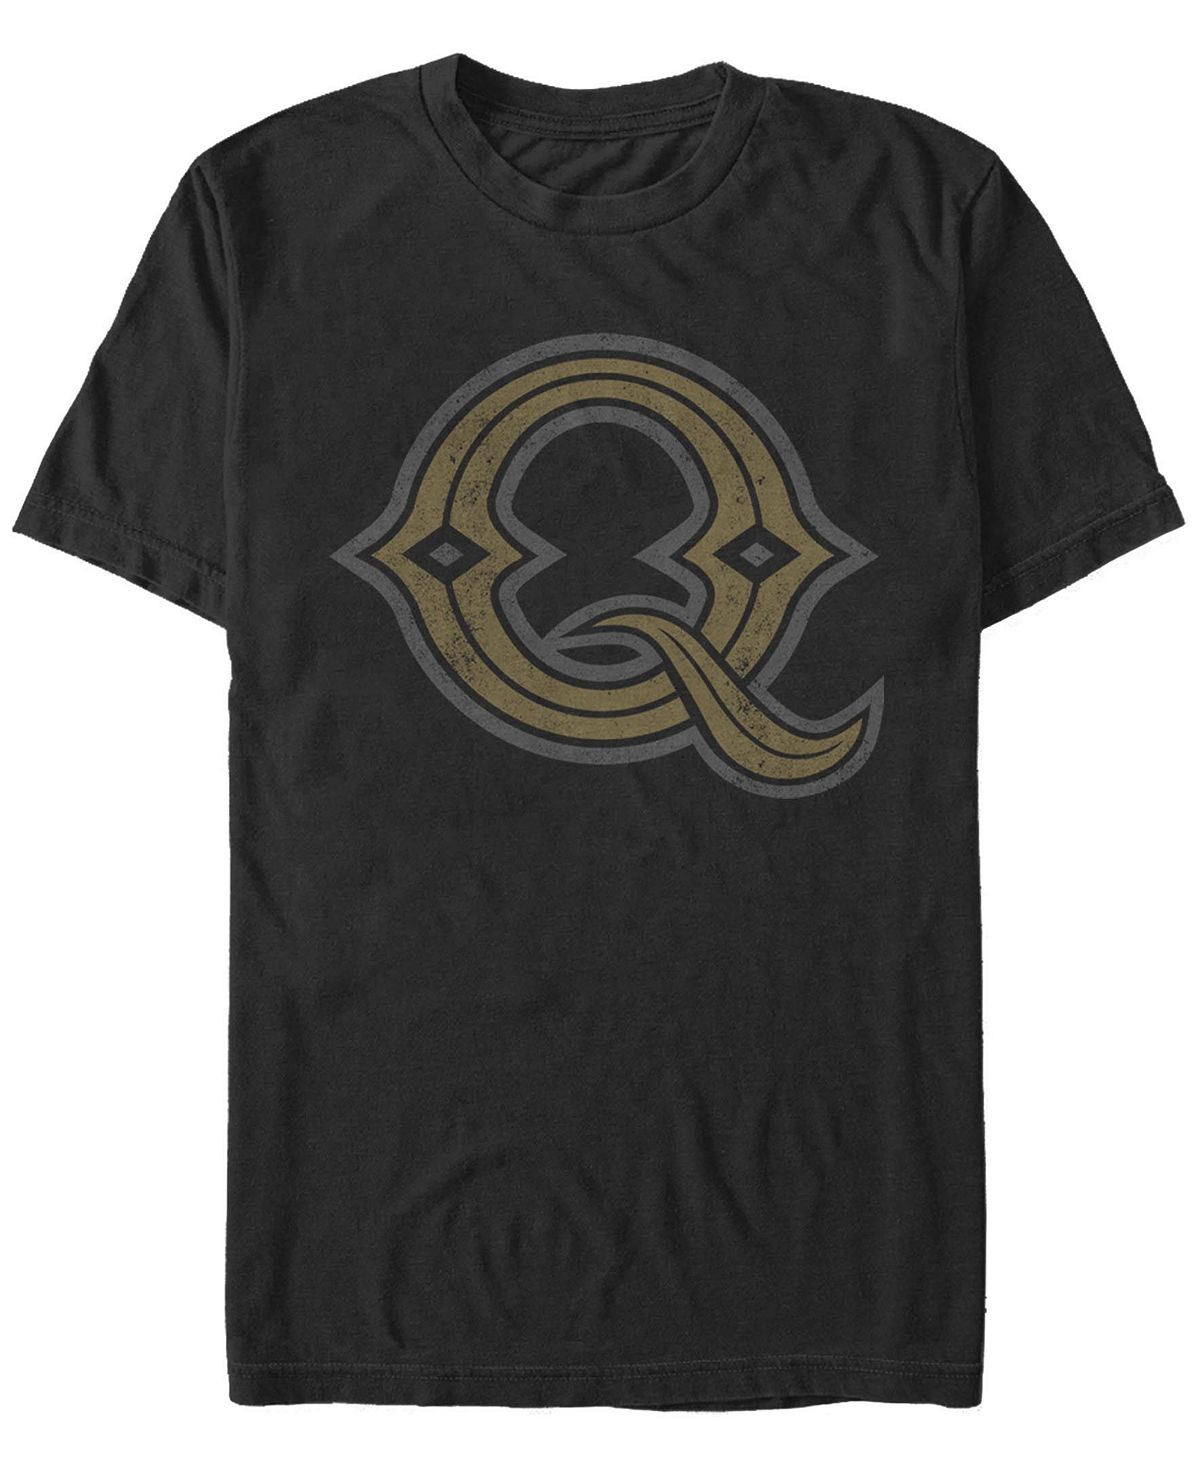 Мужская футболка с круглым вырезом barley q с короткими рукавами Fifth Sun, черный мусорное ведро boheme 10108